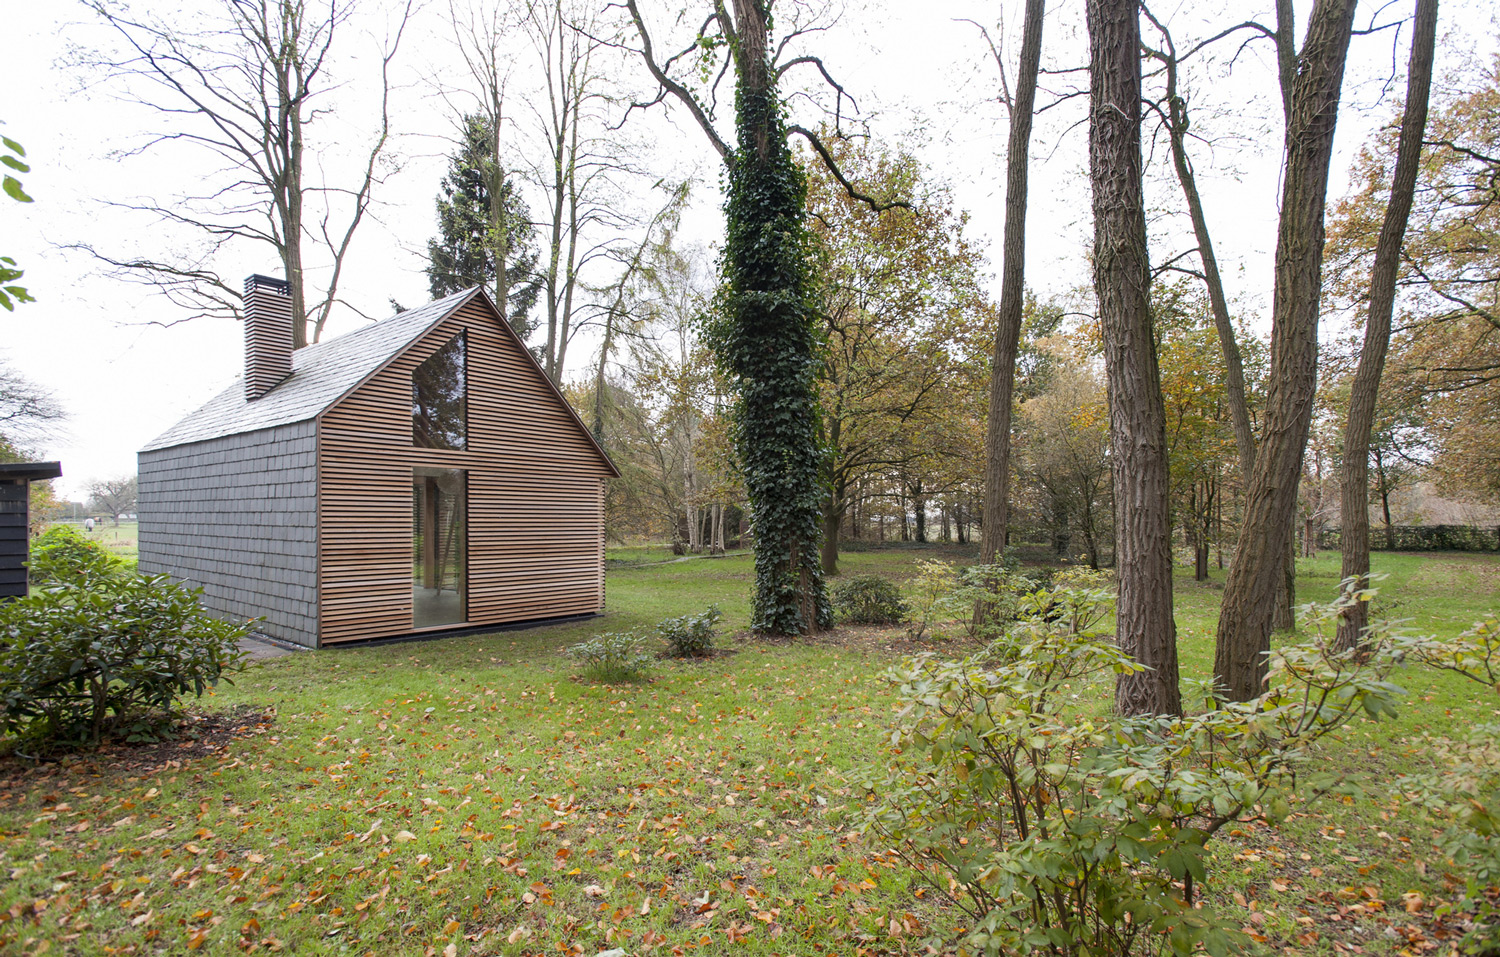 Recreationhouse-Roel-van-Norel-Zecc-Architecten-20.jpg